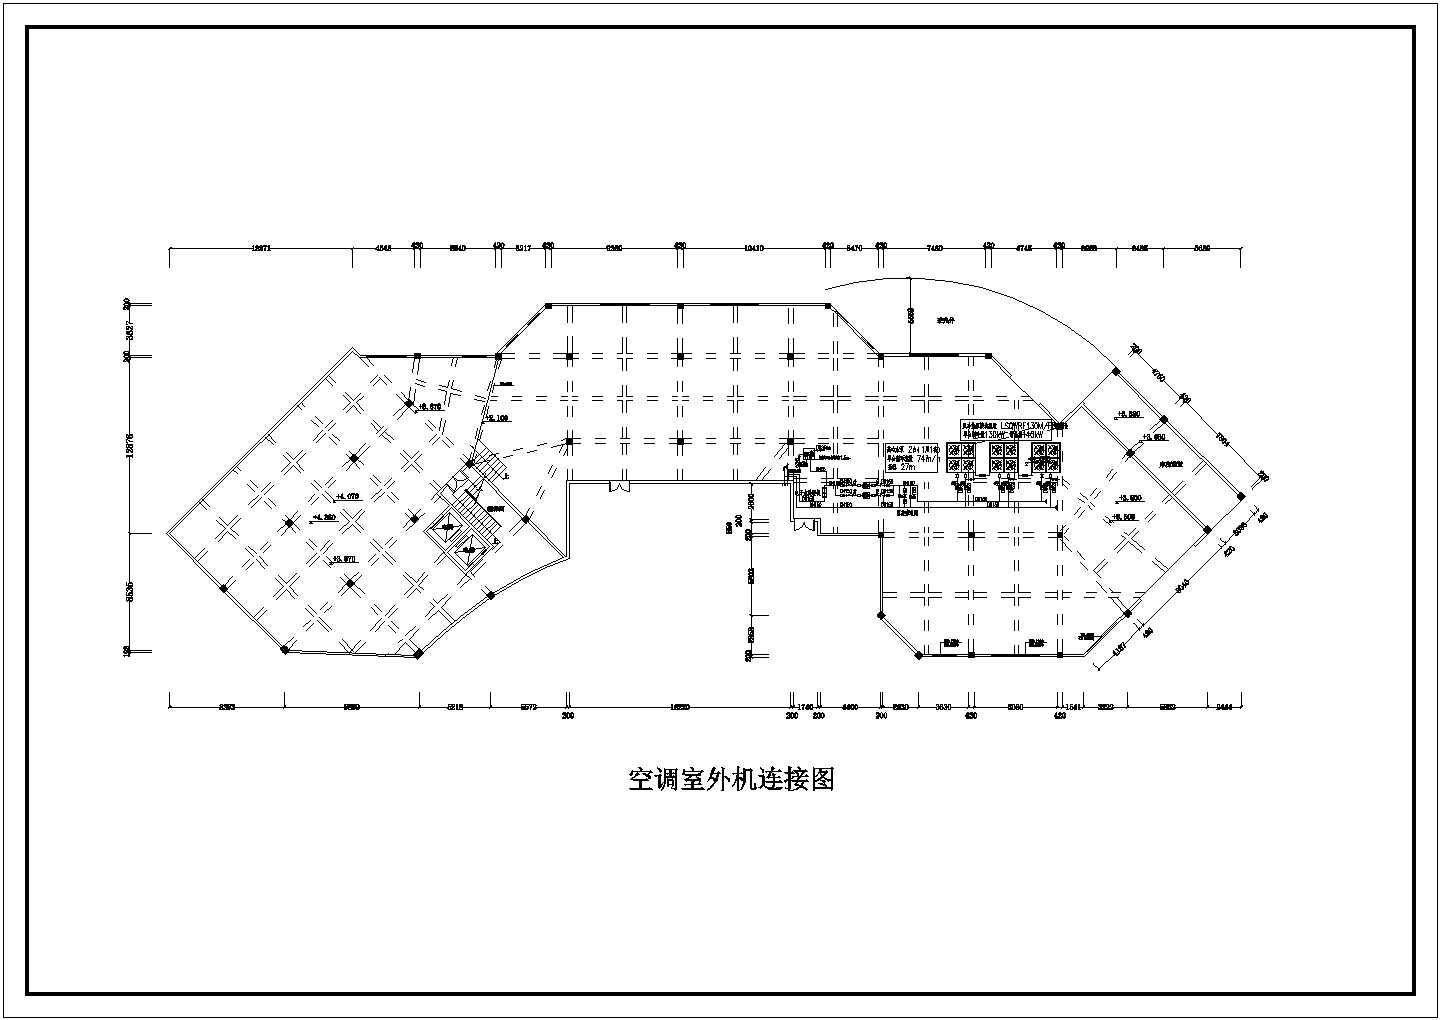 【四川】1232㎡四层办公楼中央空调系统设计施工图